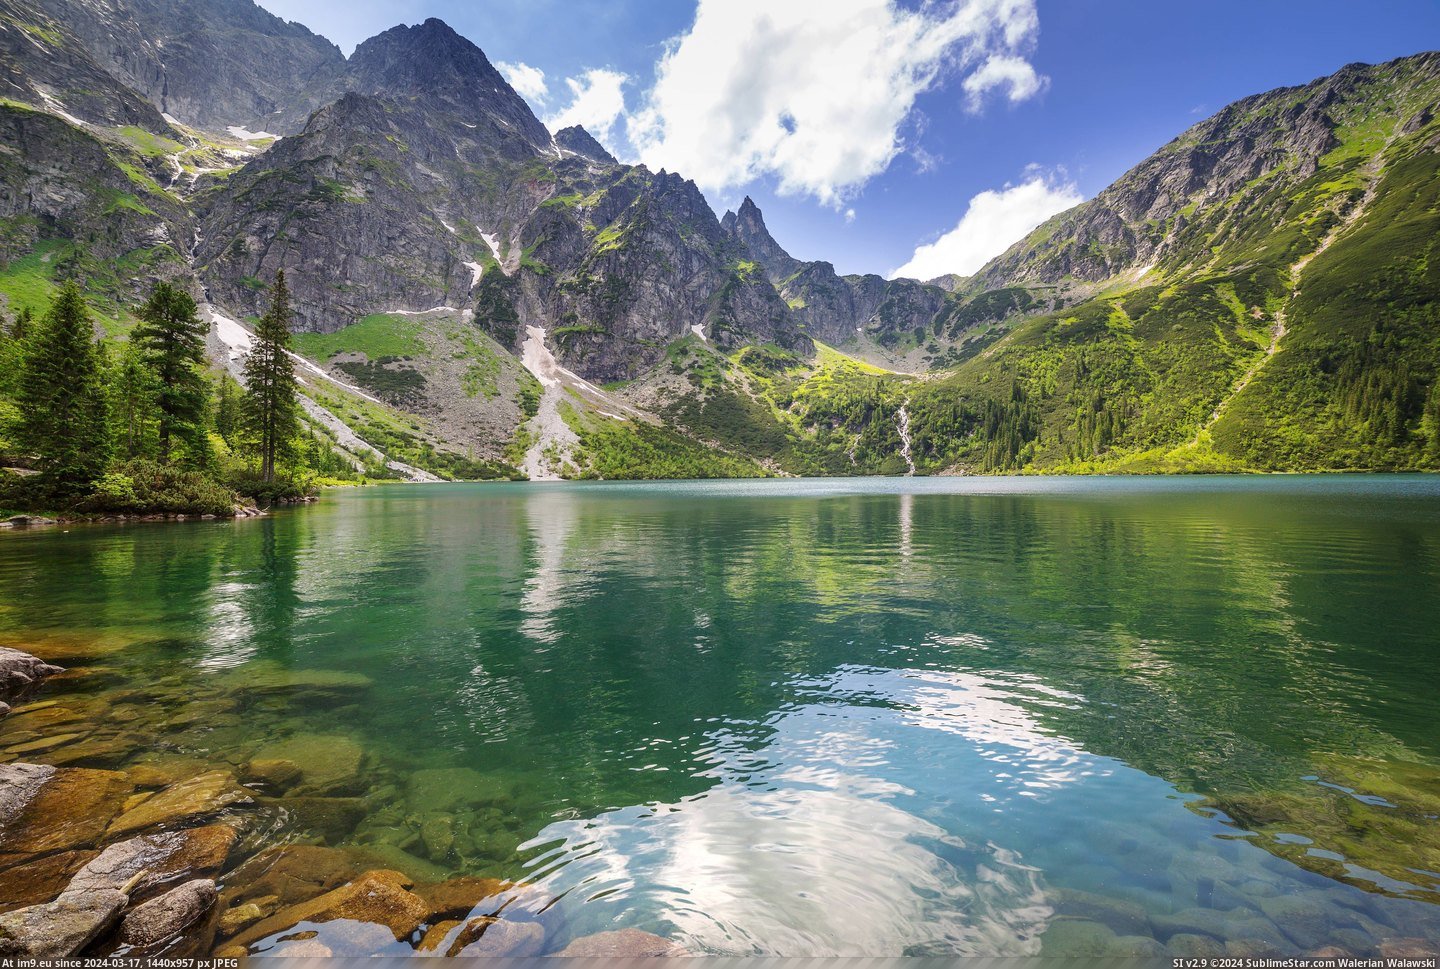 #Lake #Mountains #Poland #Eye #Sea [Earthporn] Eye of the Sea lake in Tatra mountains, Poland by Patryk Kosmider [5250 × 3500] Pic. (Obraz z album My r/EARTHPORN favs))